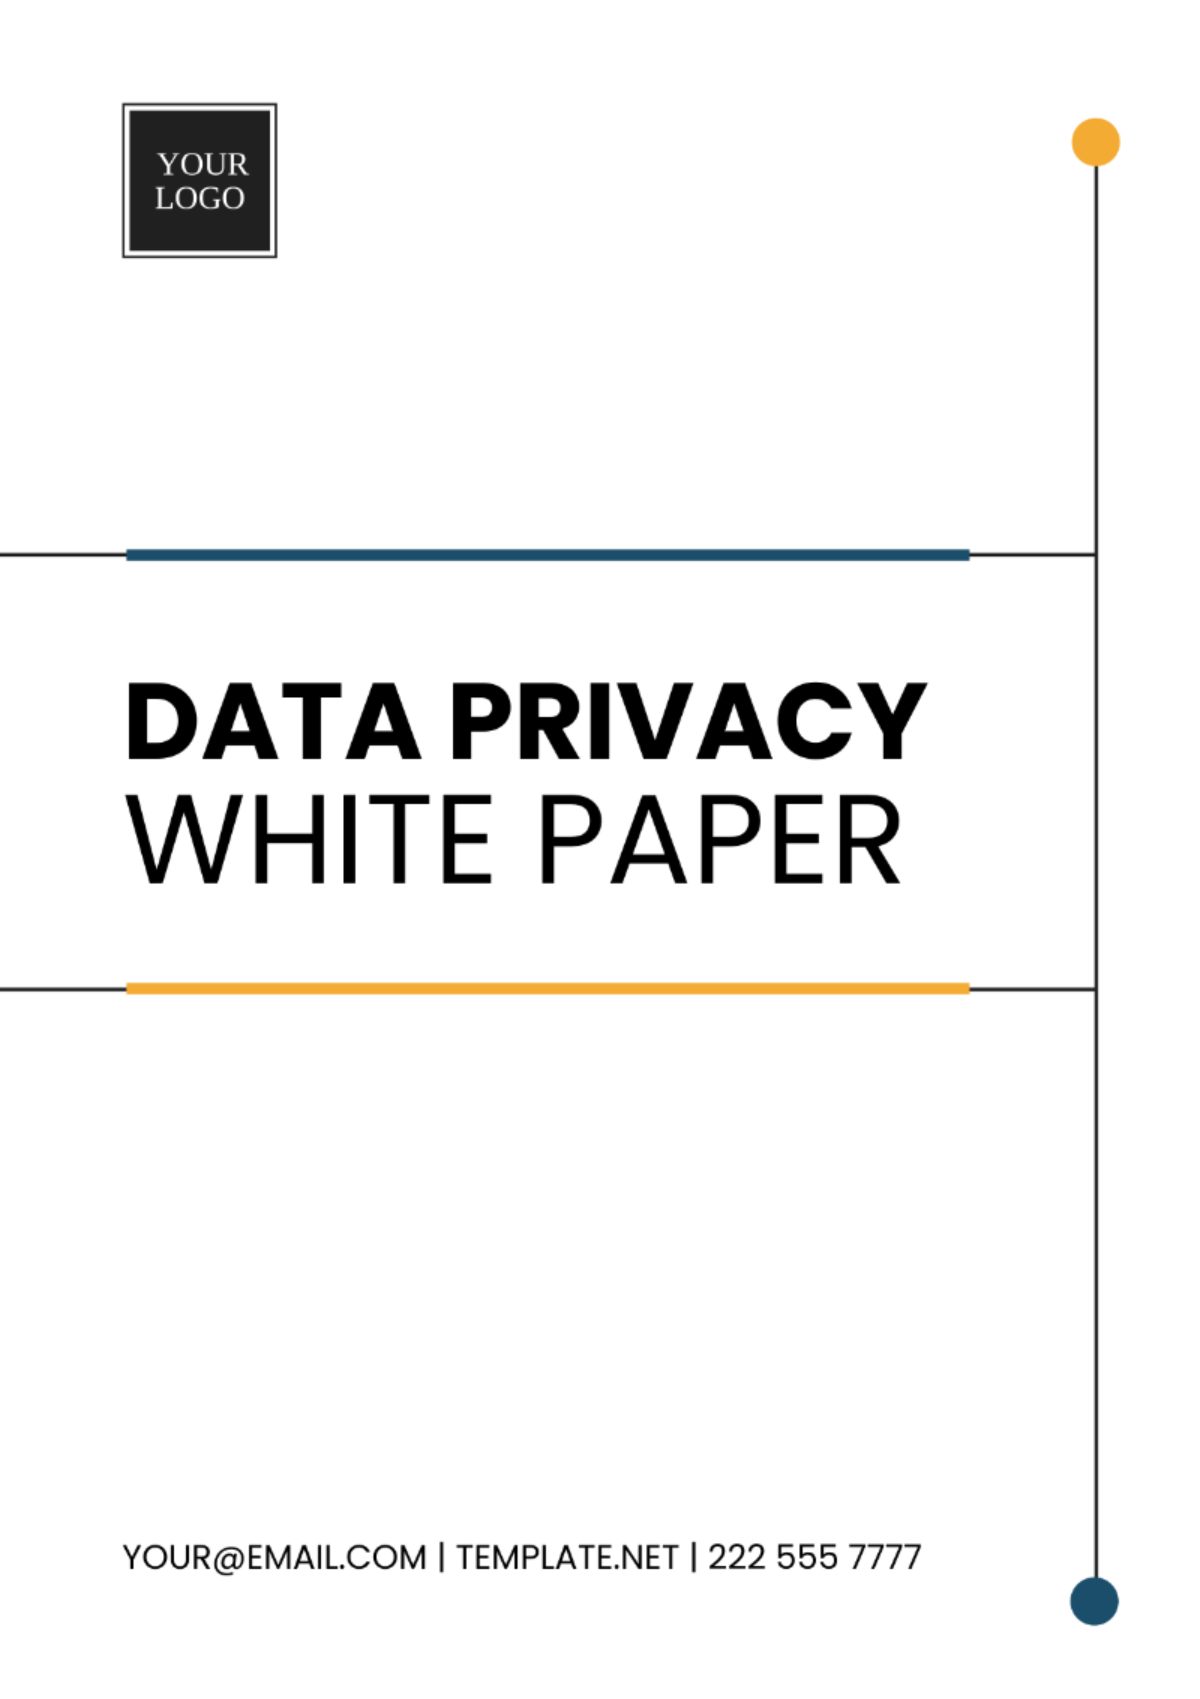 Data Privacy White Paper Template